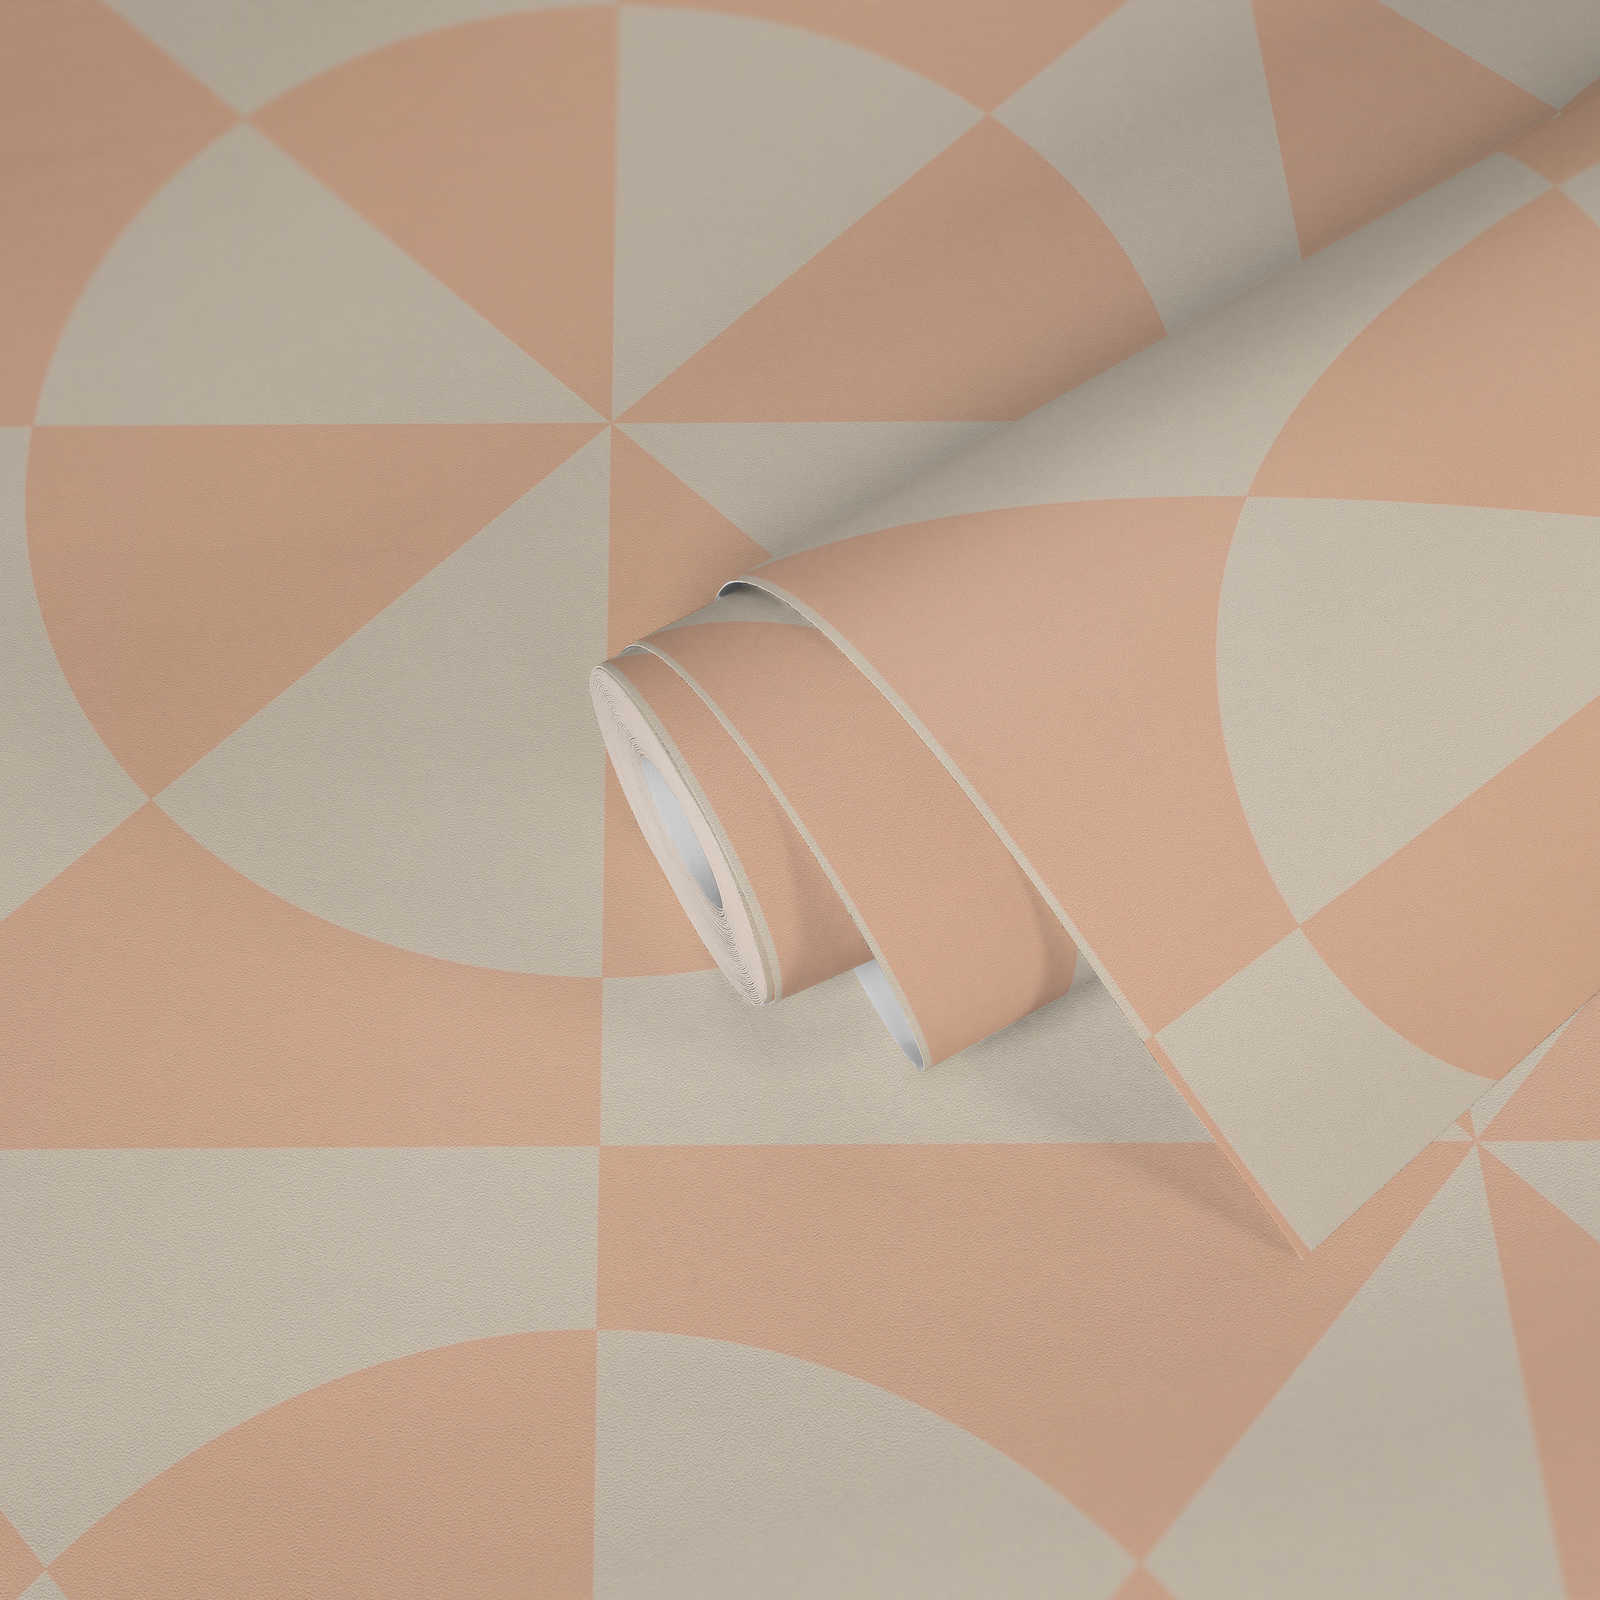             Grafische Vliestapete mit Dreiecken und Kreisen – Creme, Rosa
        